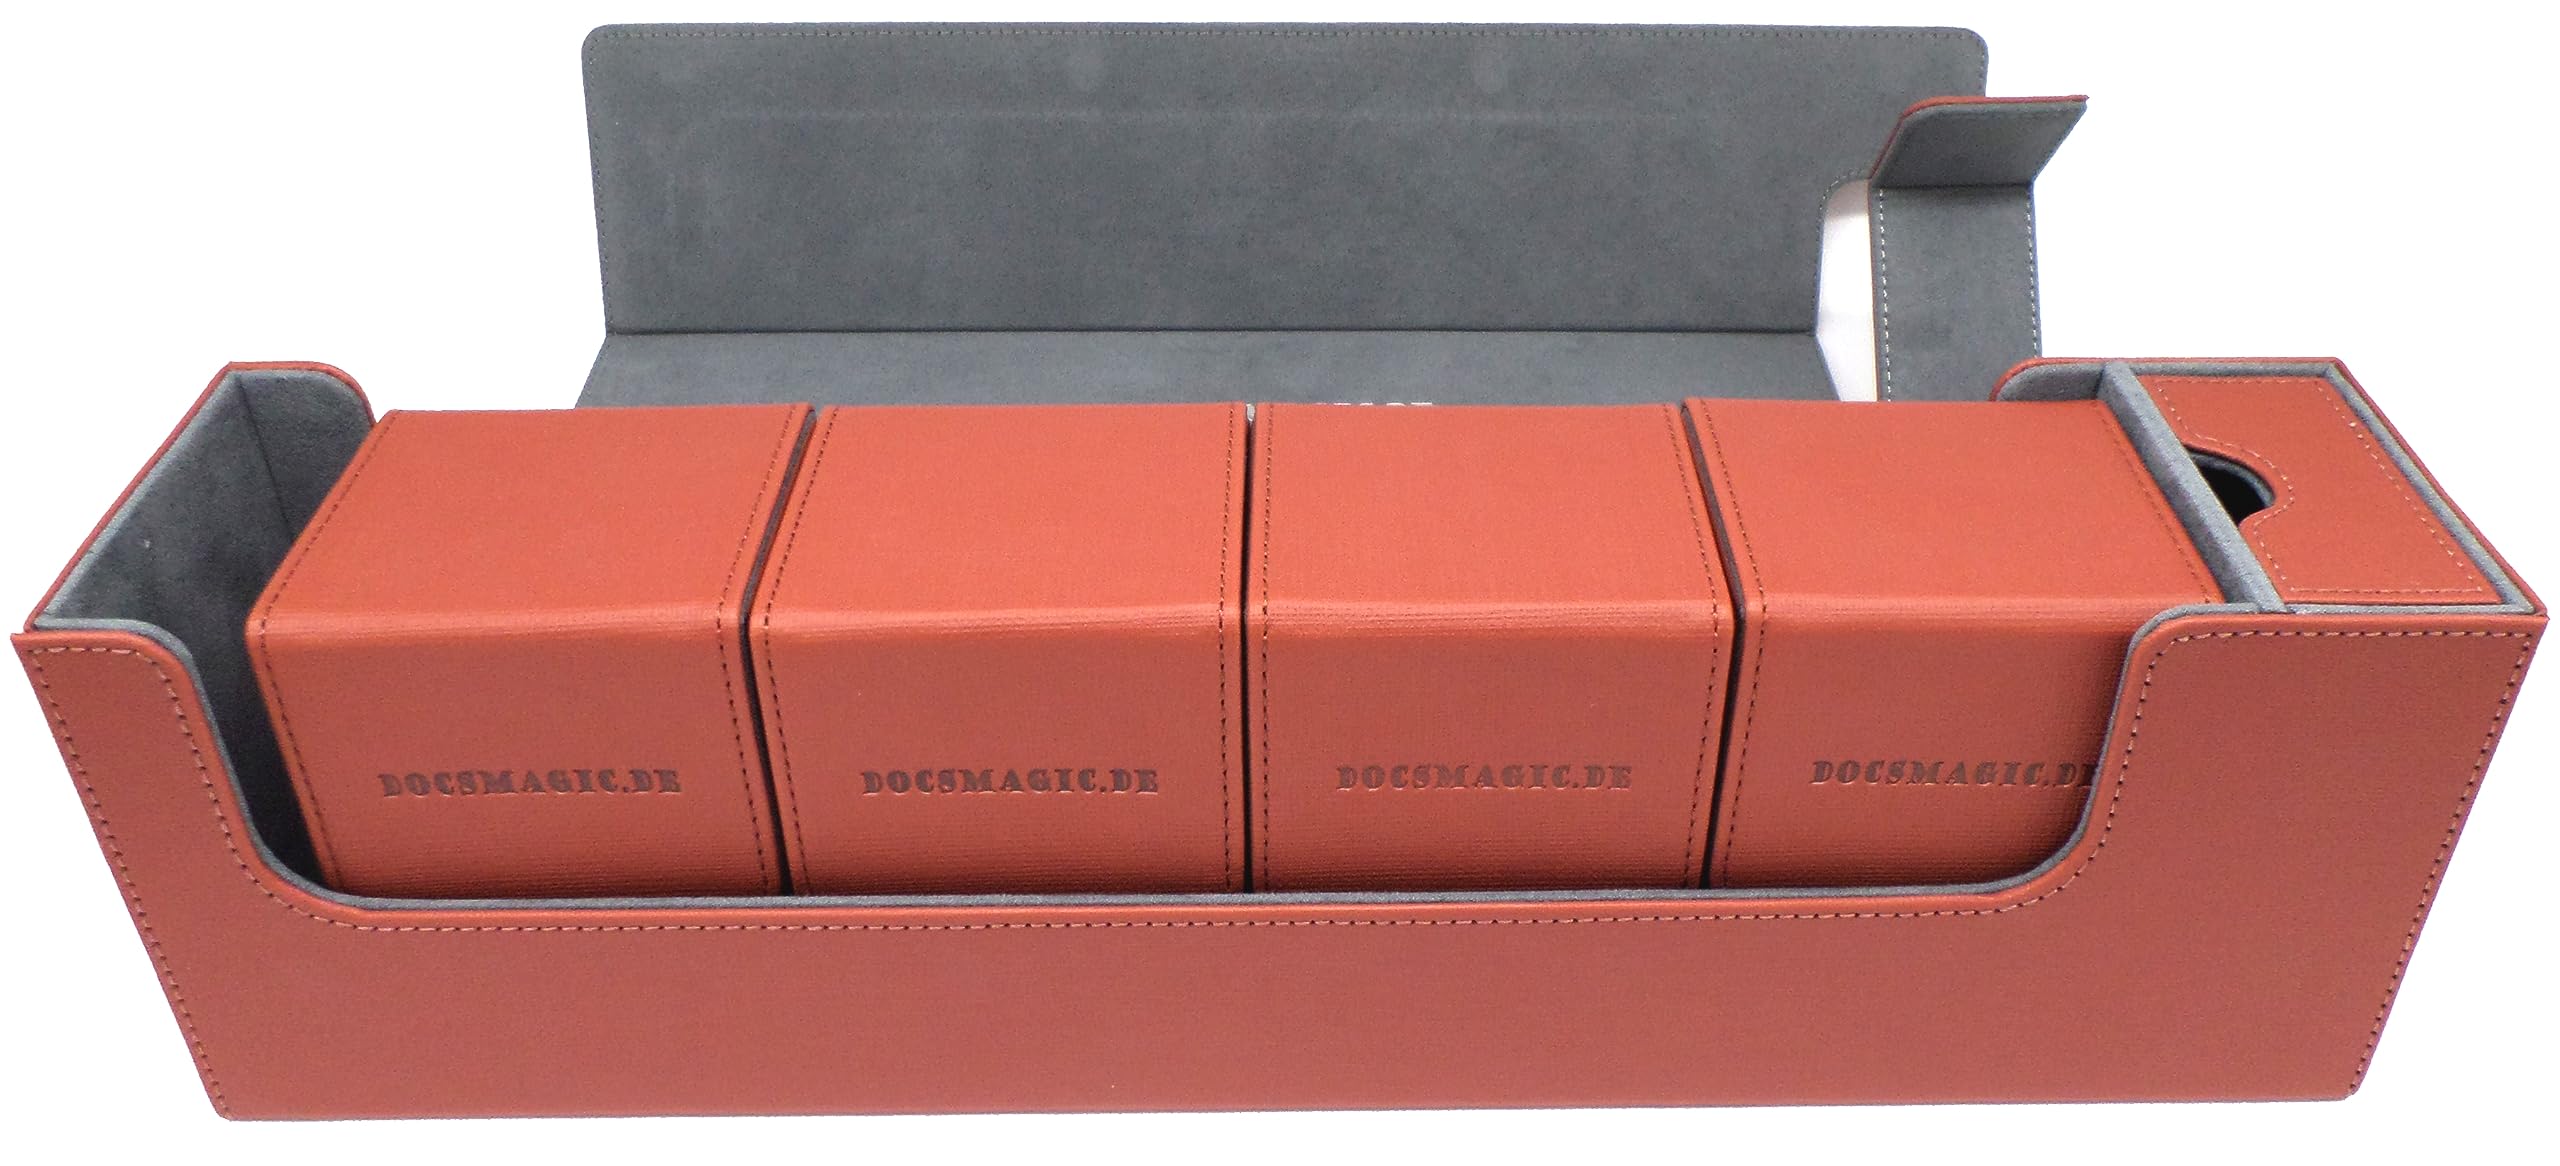 docsmagic.de Premium Magnetic Tray Long Box Copper Large + 4 Flip Boxes - Kupfer